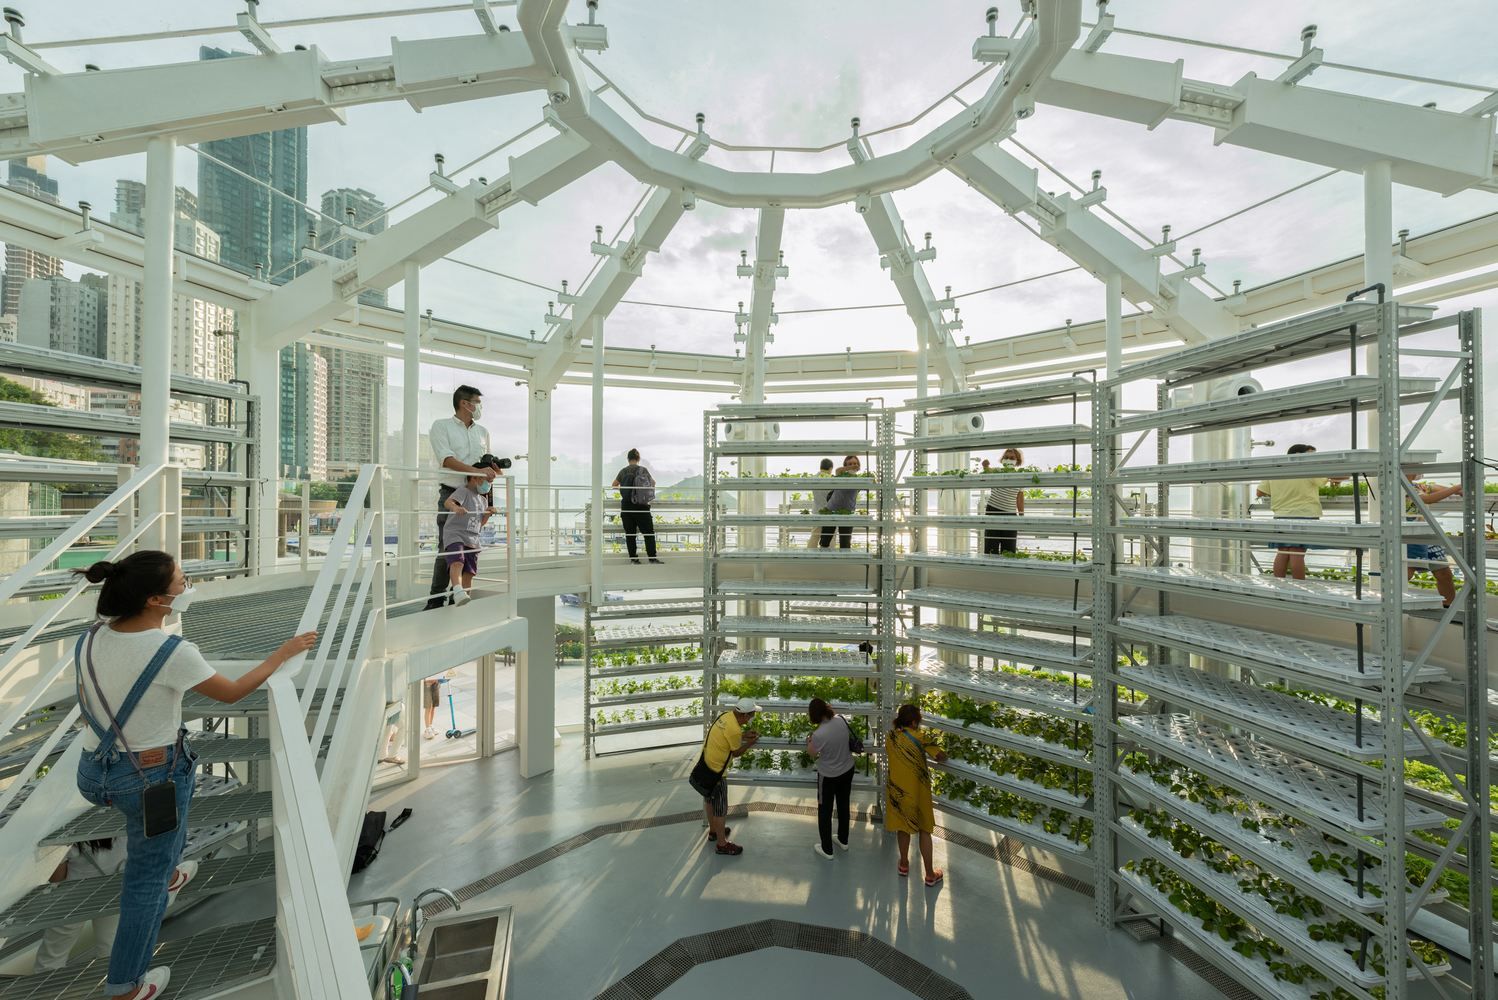 Космическая теплица с зеленью: в Гонконге создали уникальный проект для городского садоводства 